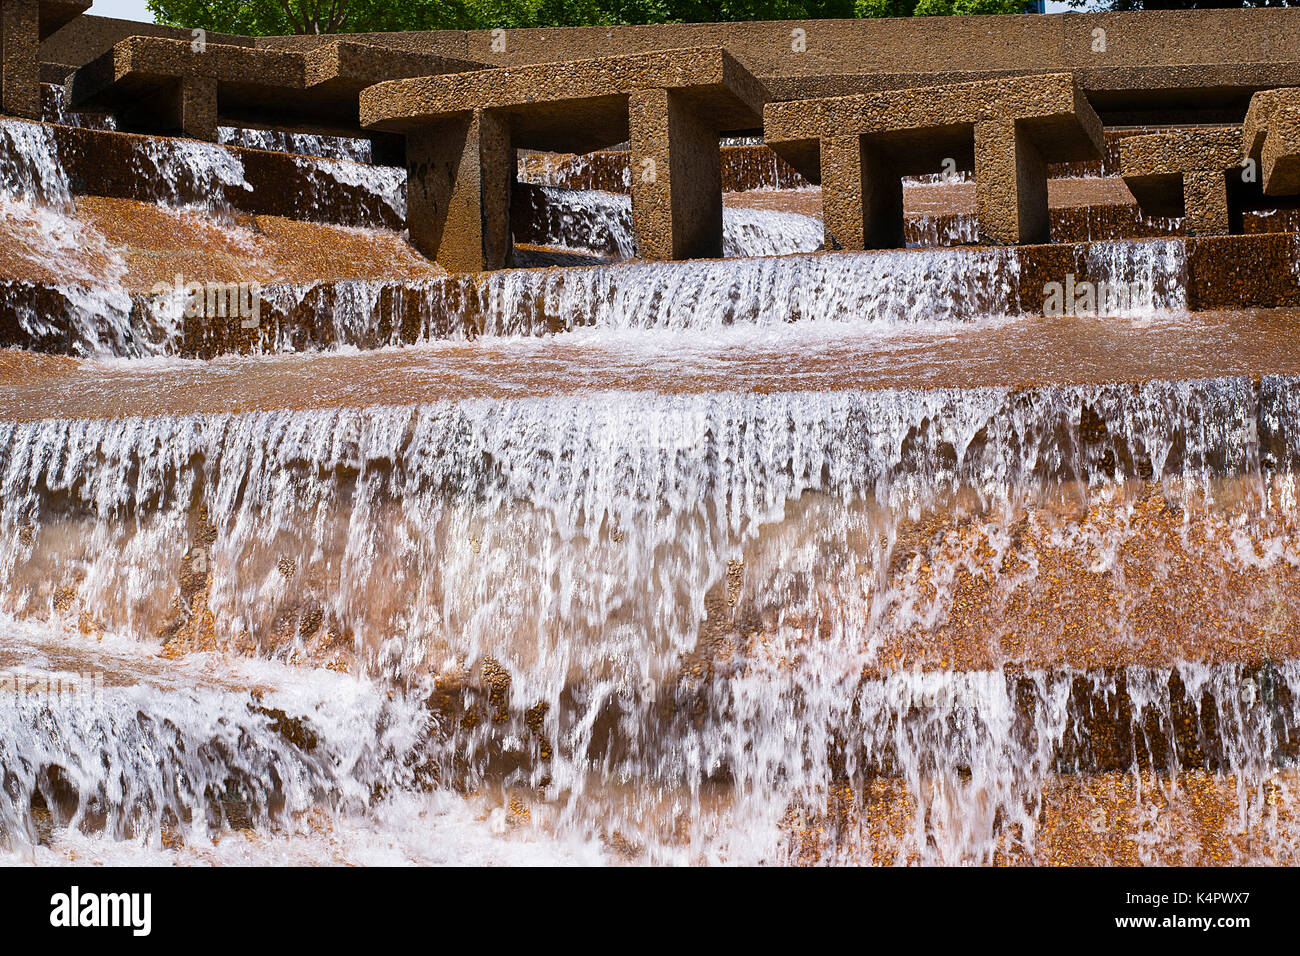 Foto von sich bewegenden Wassers am Fort Worth Water Gardens. Stockfoto